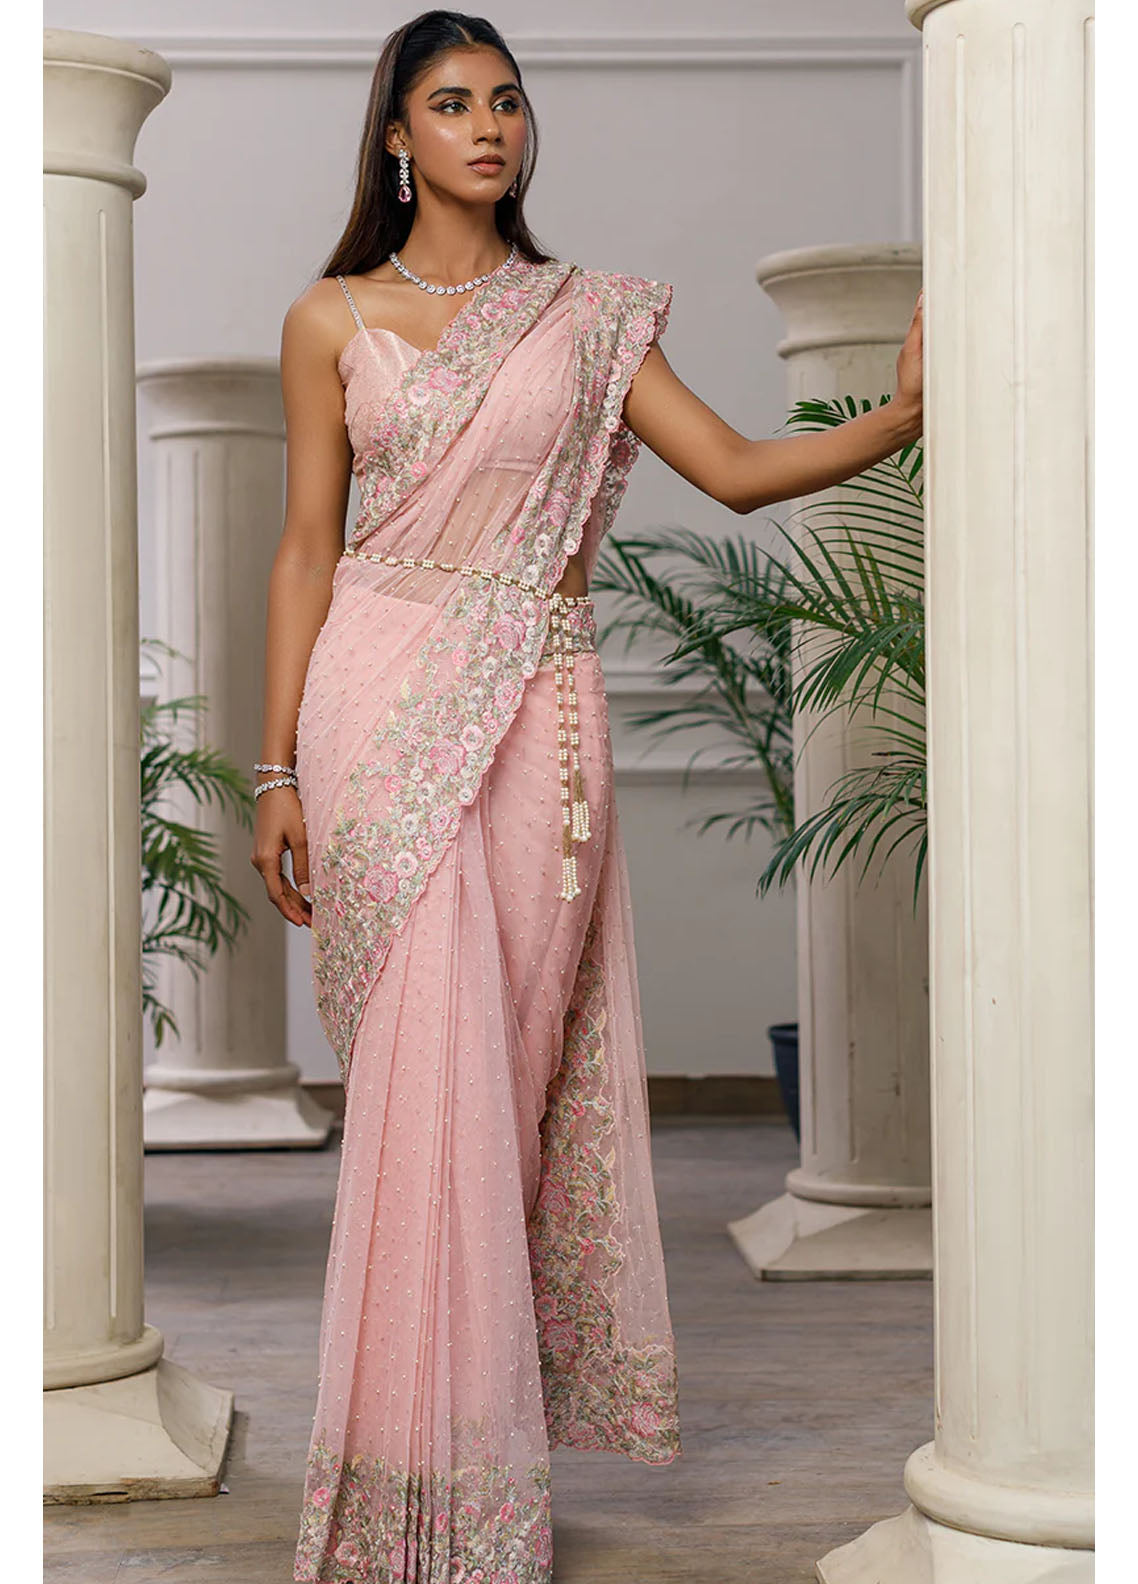 Threads & Motifs Luxury Pret Net Saree 8170